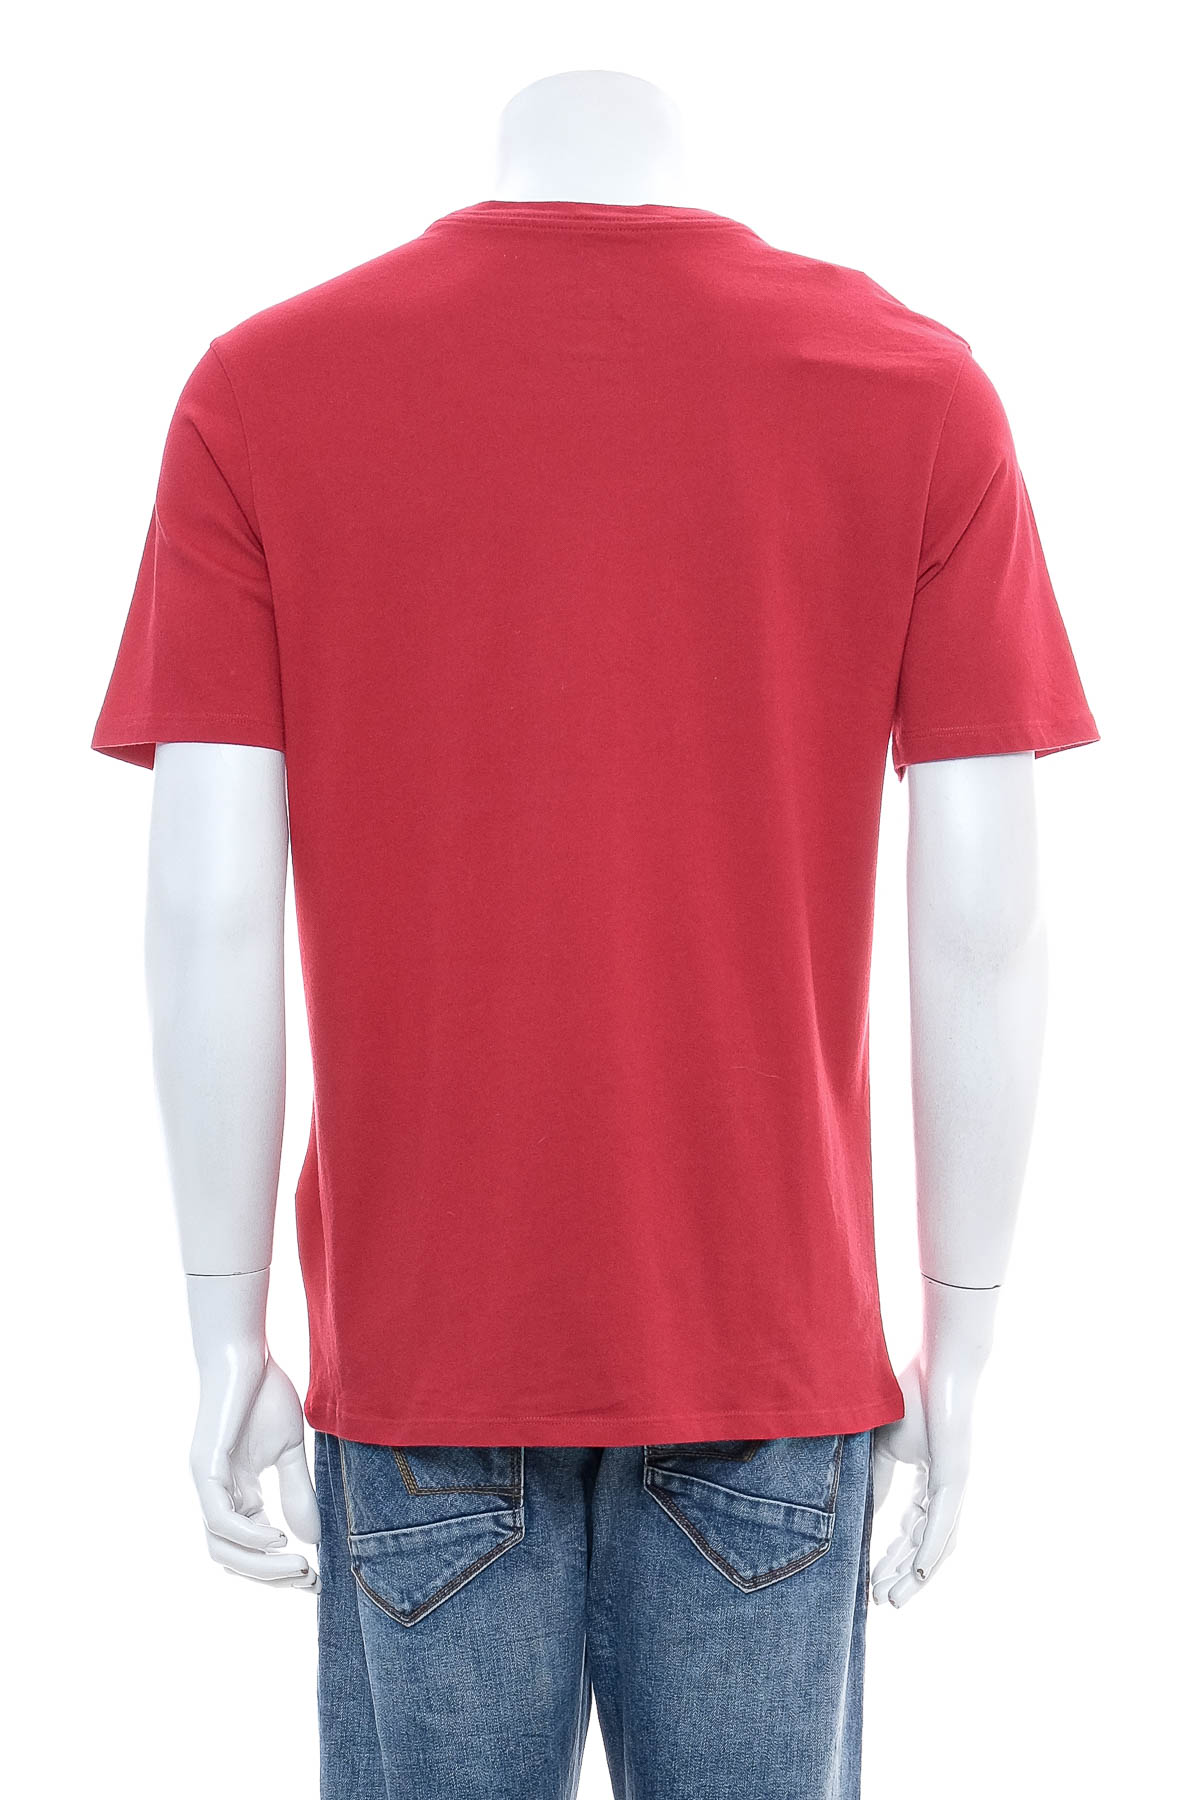 Ανδρικό μπλουζάκι - THE NIKE TEE - 1